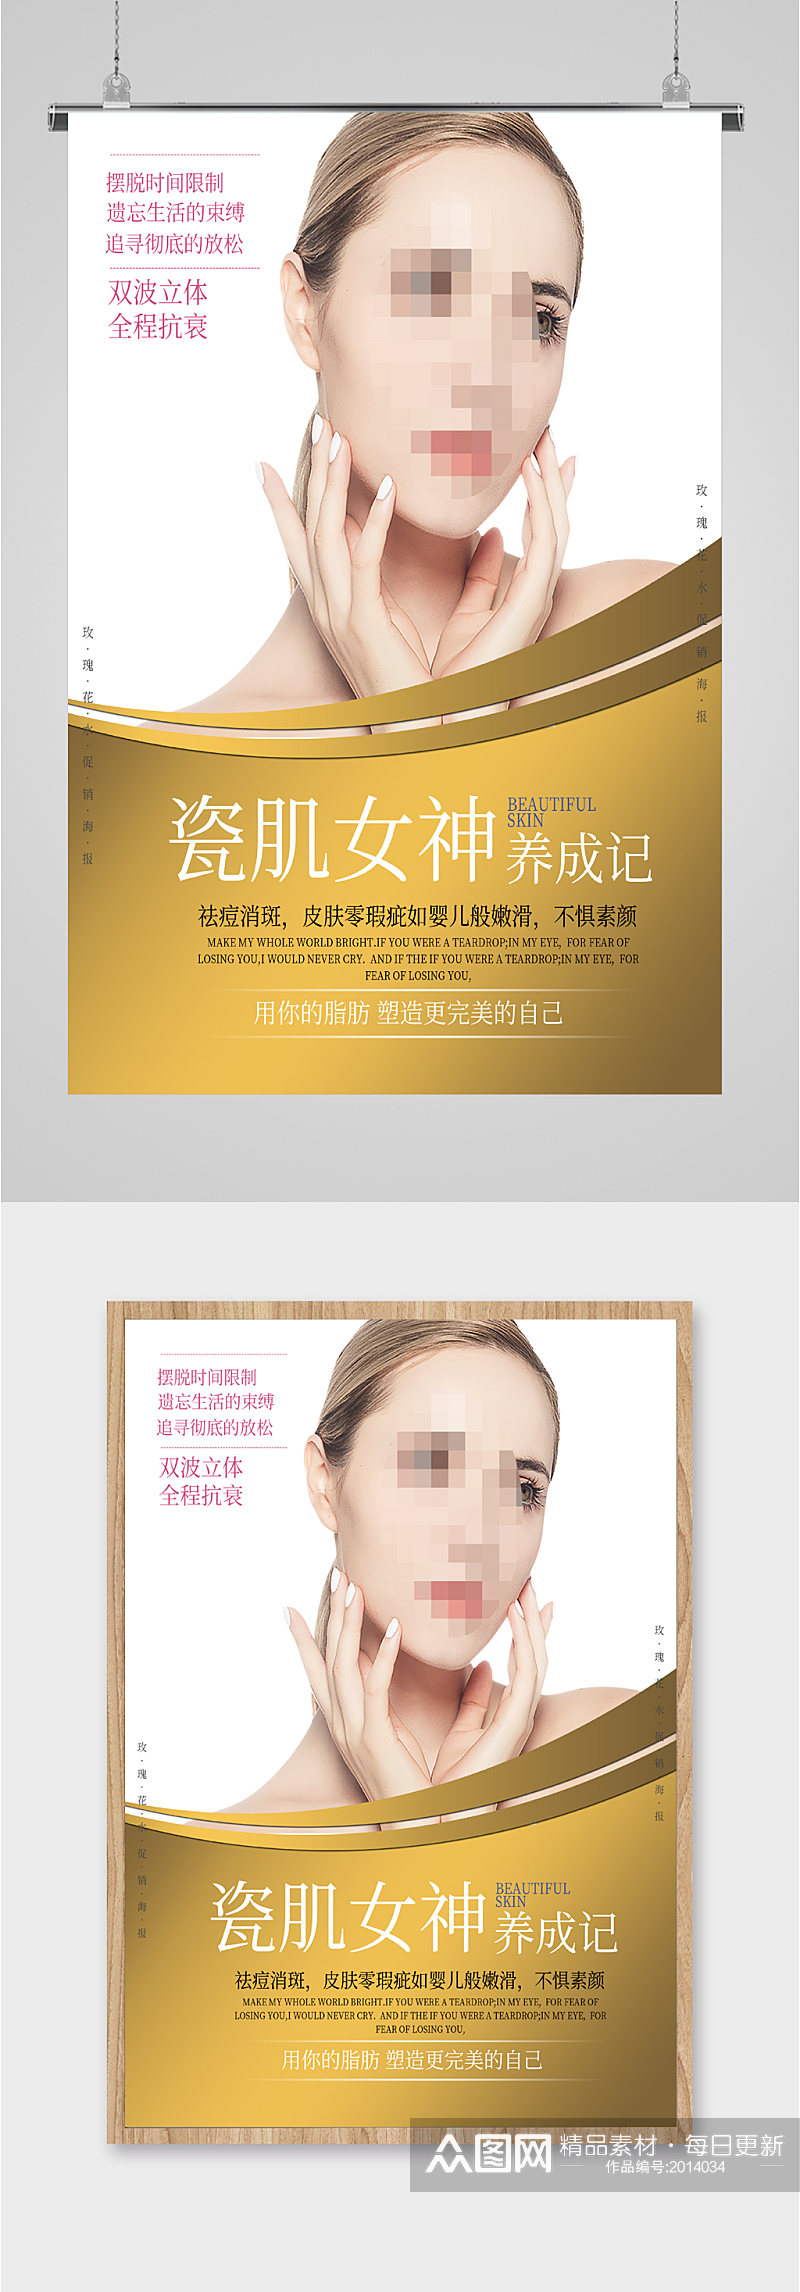 女神化妆品宣传销售海报素材